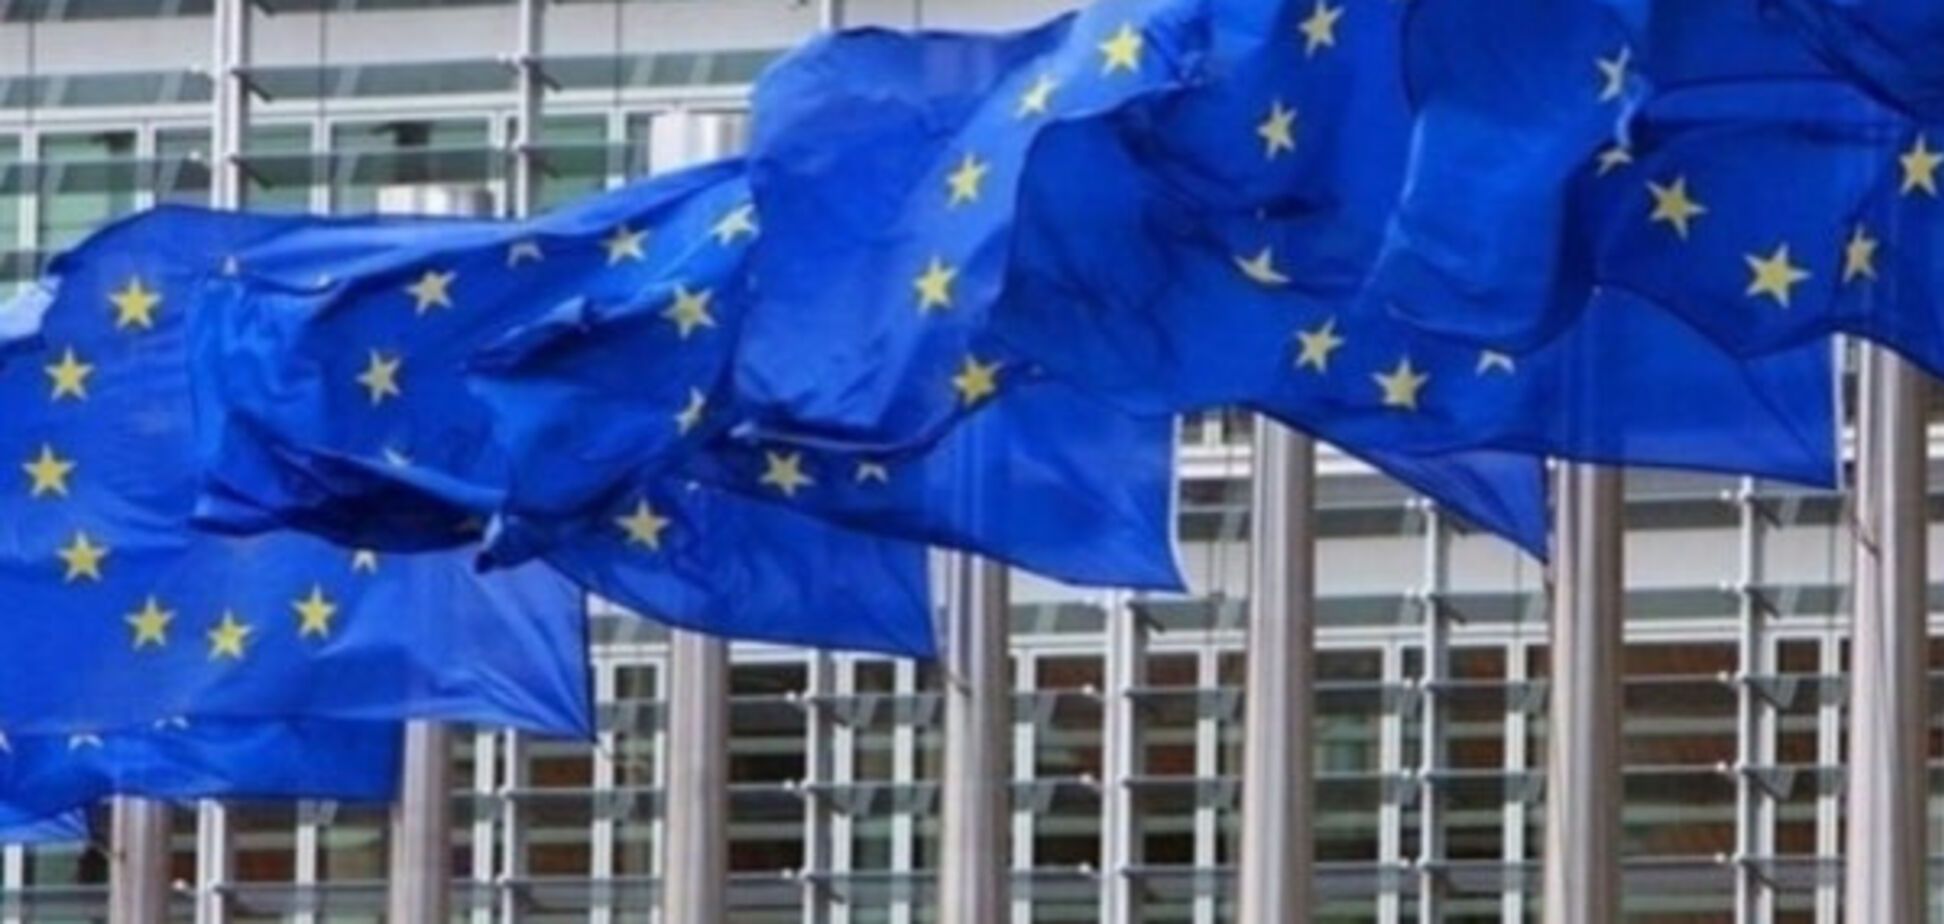 Прапори ЄС біля будинку Європейської комісії